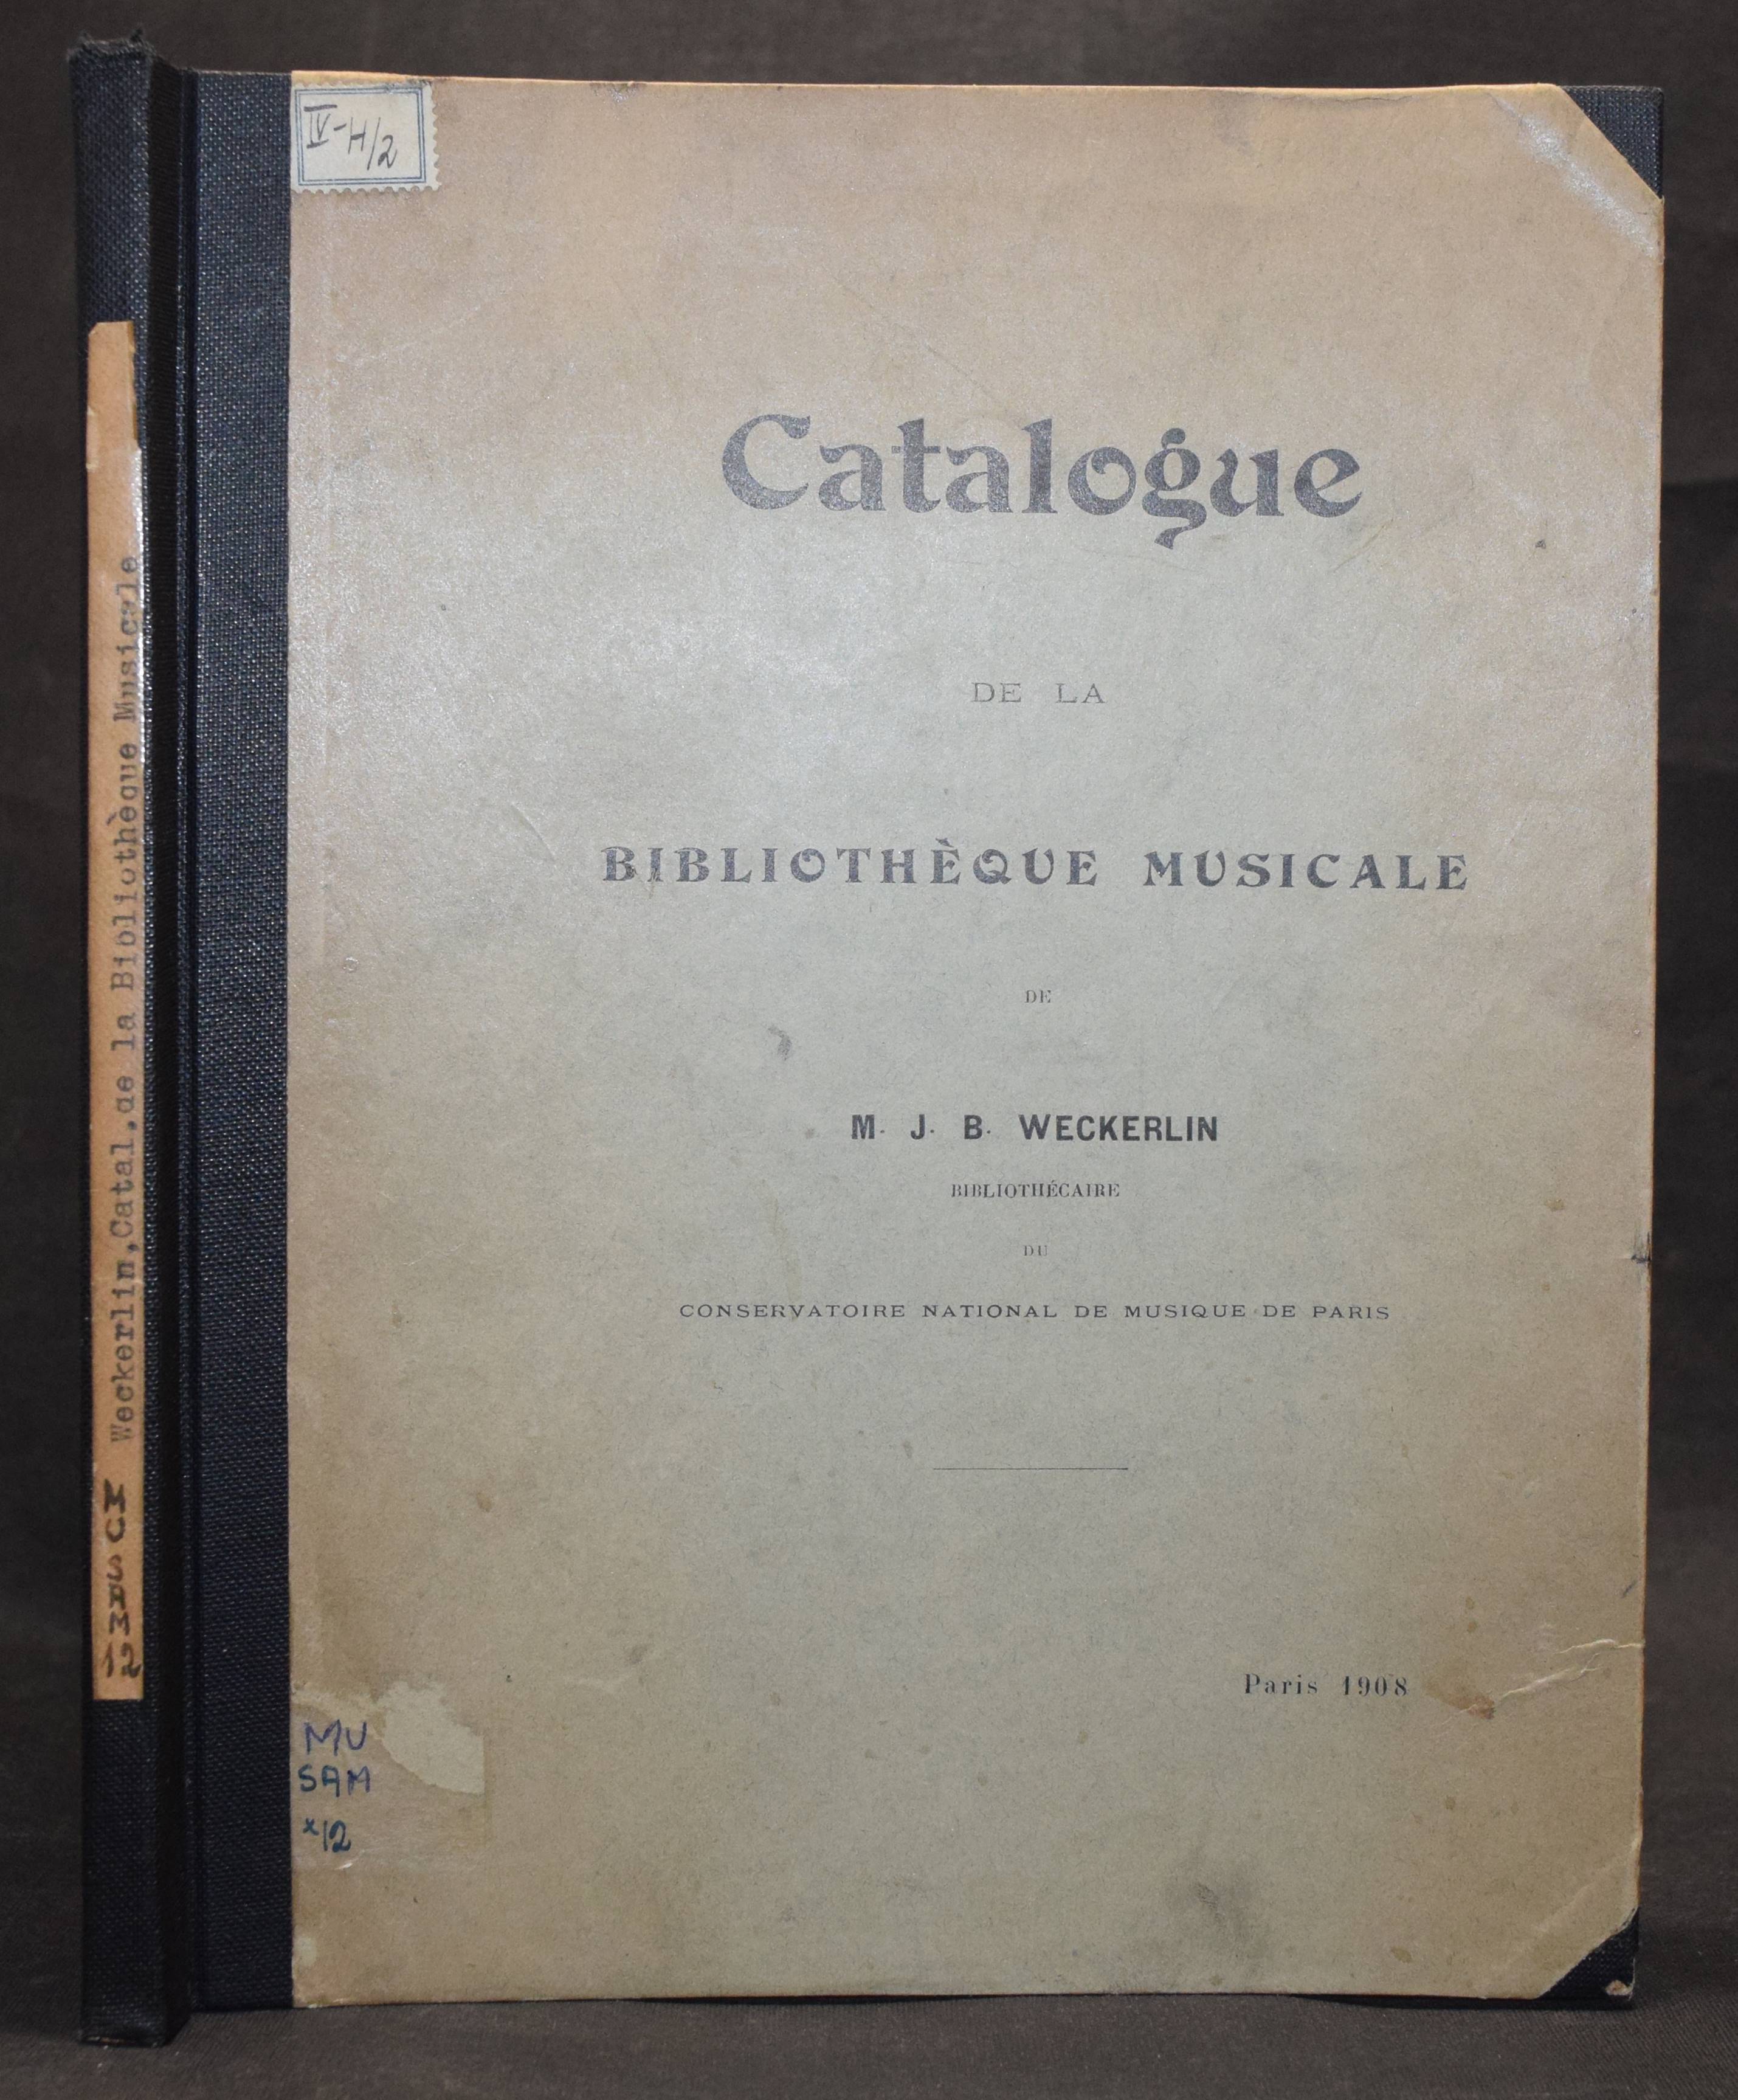 Catalogue de la bibliotheque musicale. - Weckerlin, M. J. B.